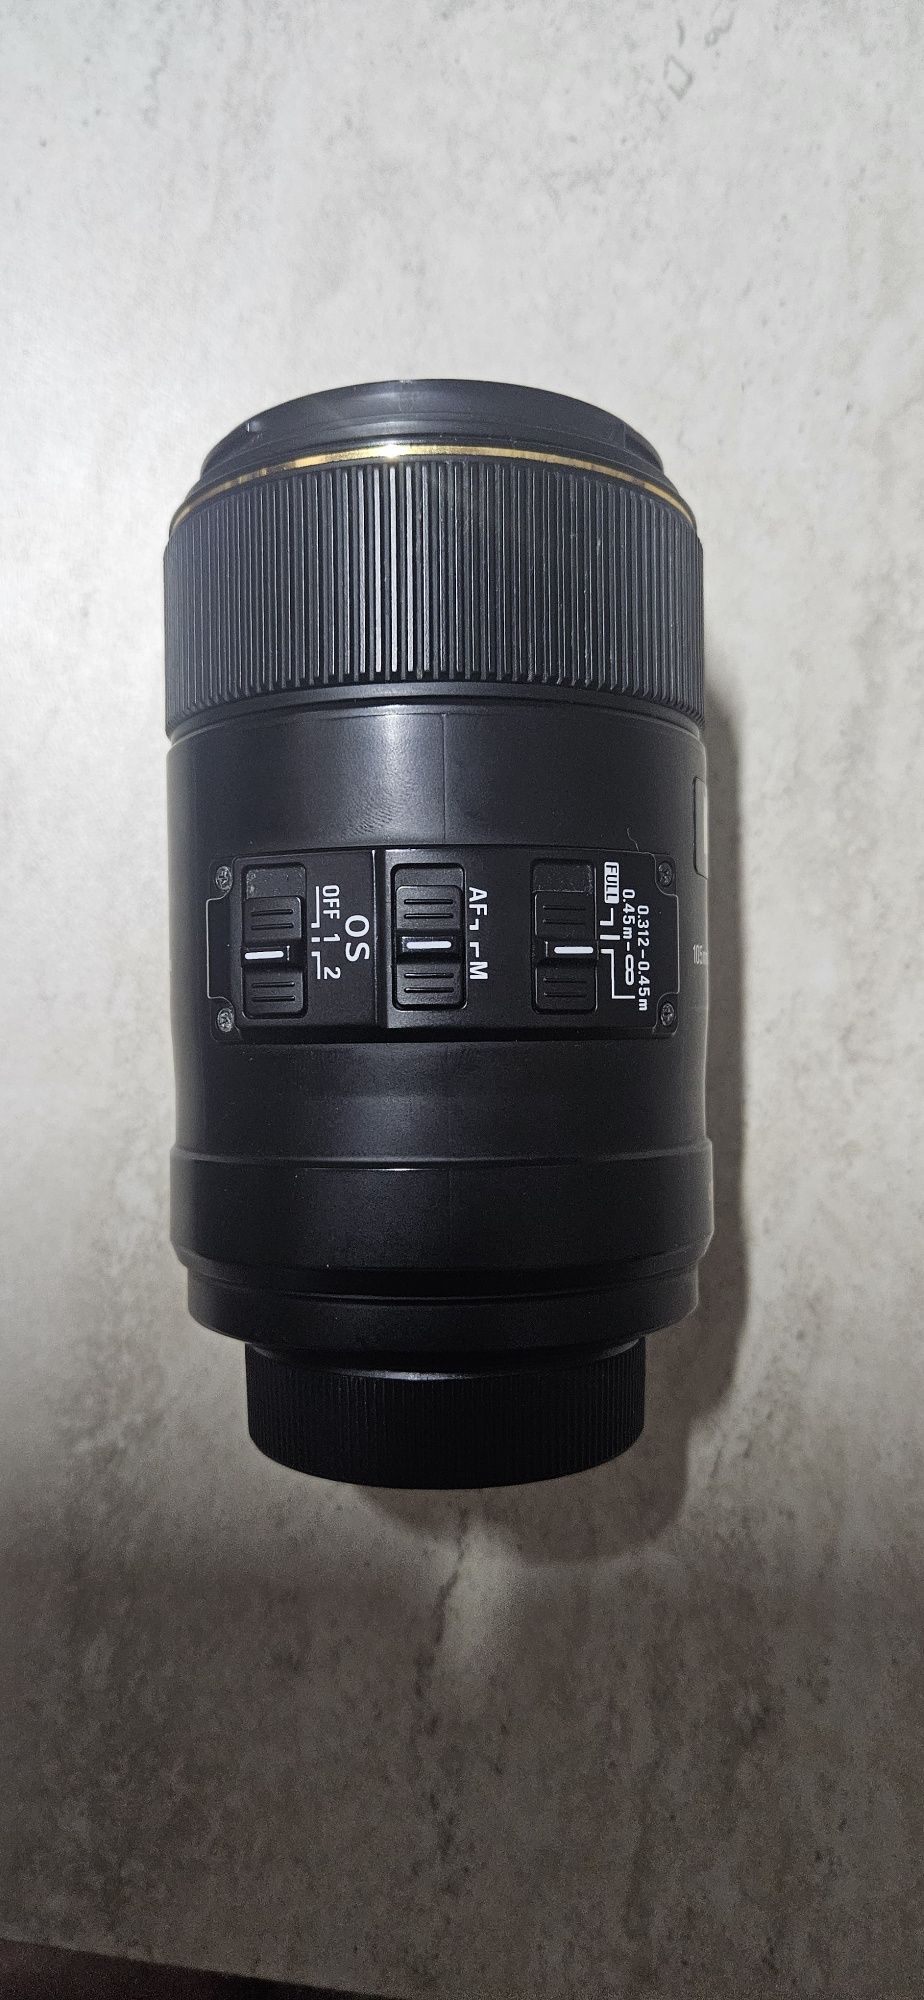 De vânzare Sigma macro montura Nikon f 105mm